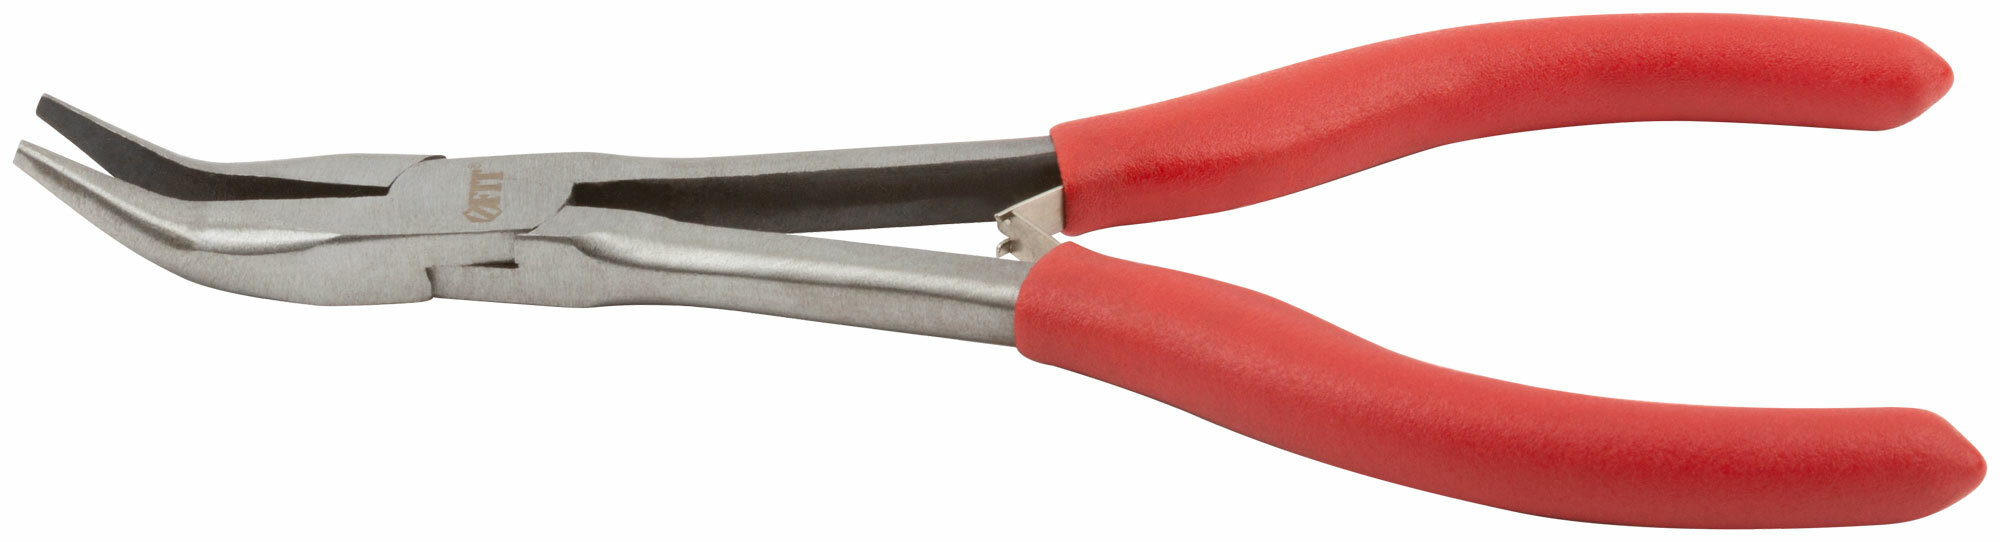 Утконосы 180 мм, Профи мини, удлиненные красные ручки